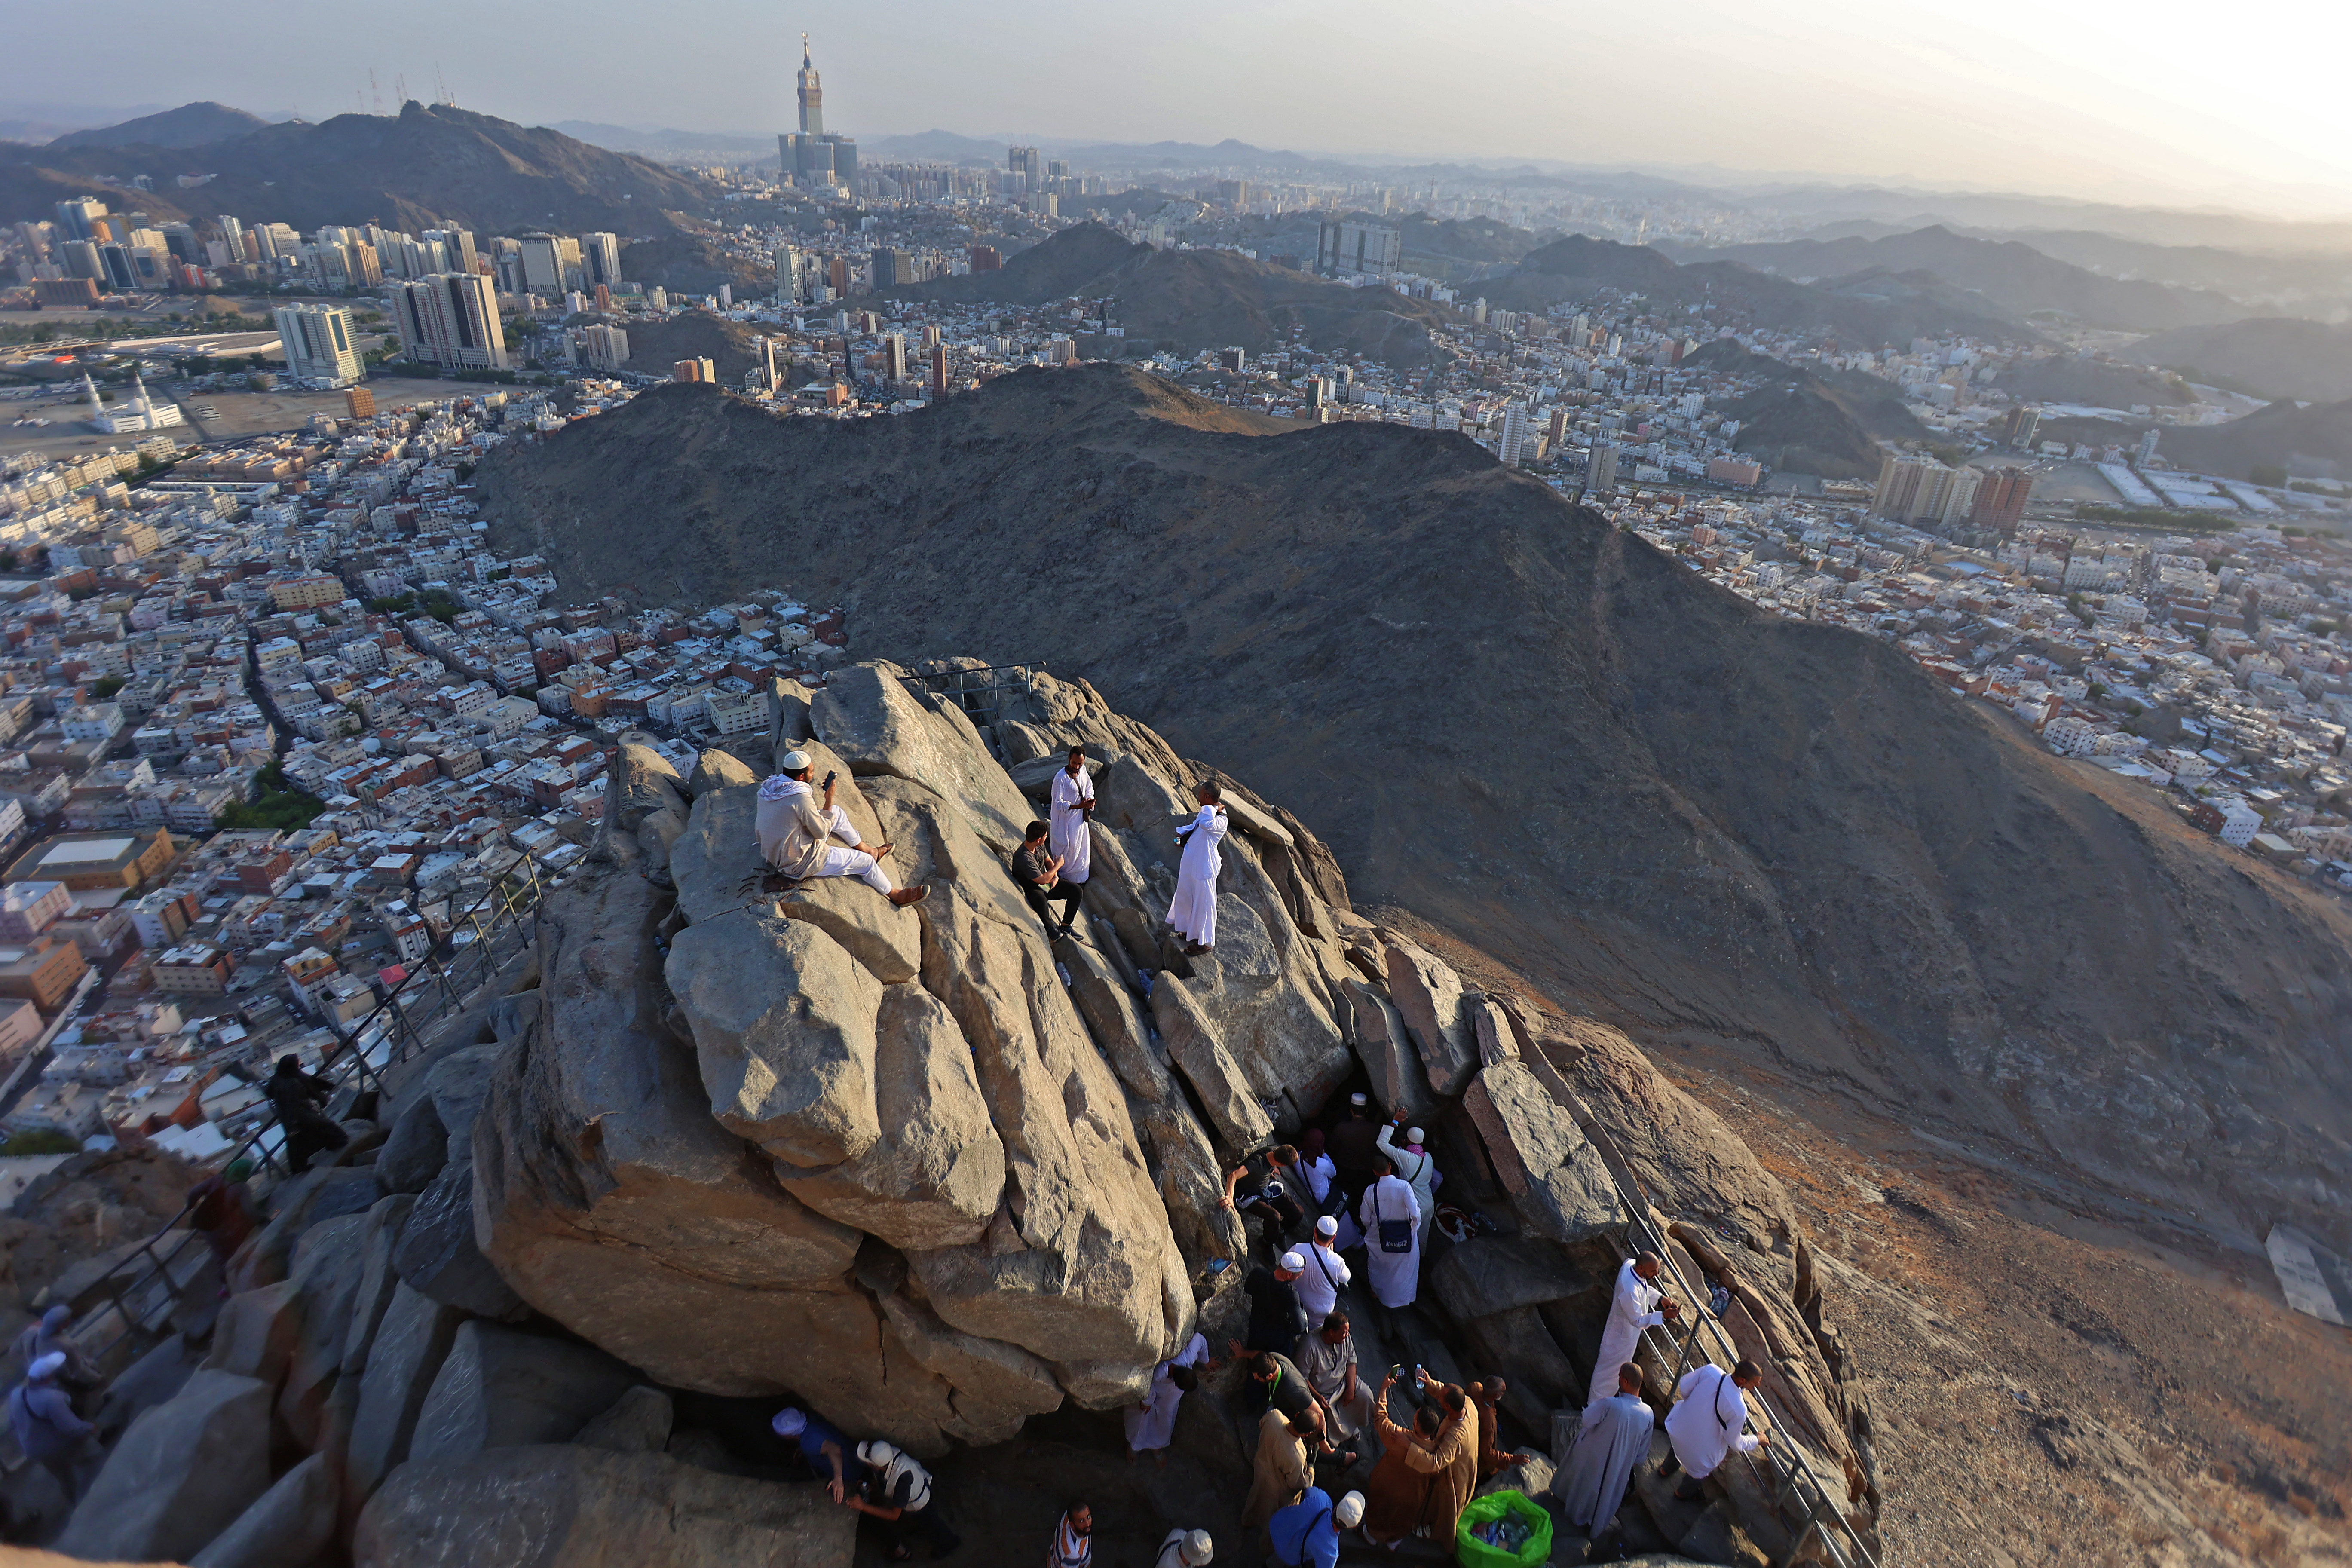 Un viaje de siete mil kilómetros a pie para cumplir el sueño de orar en La Meca